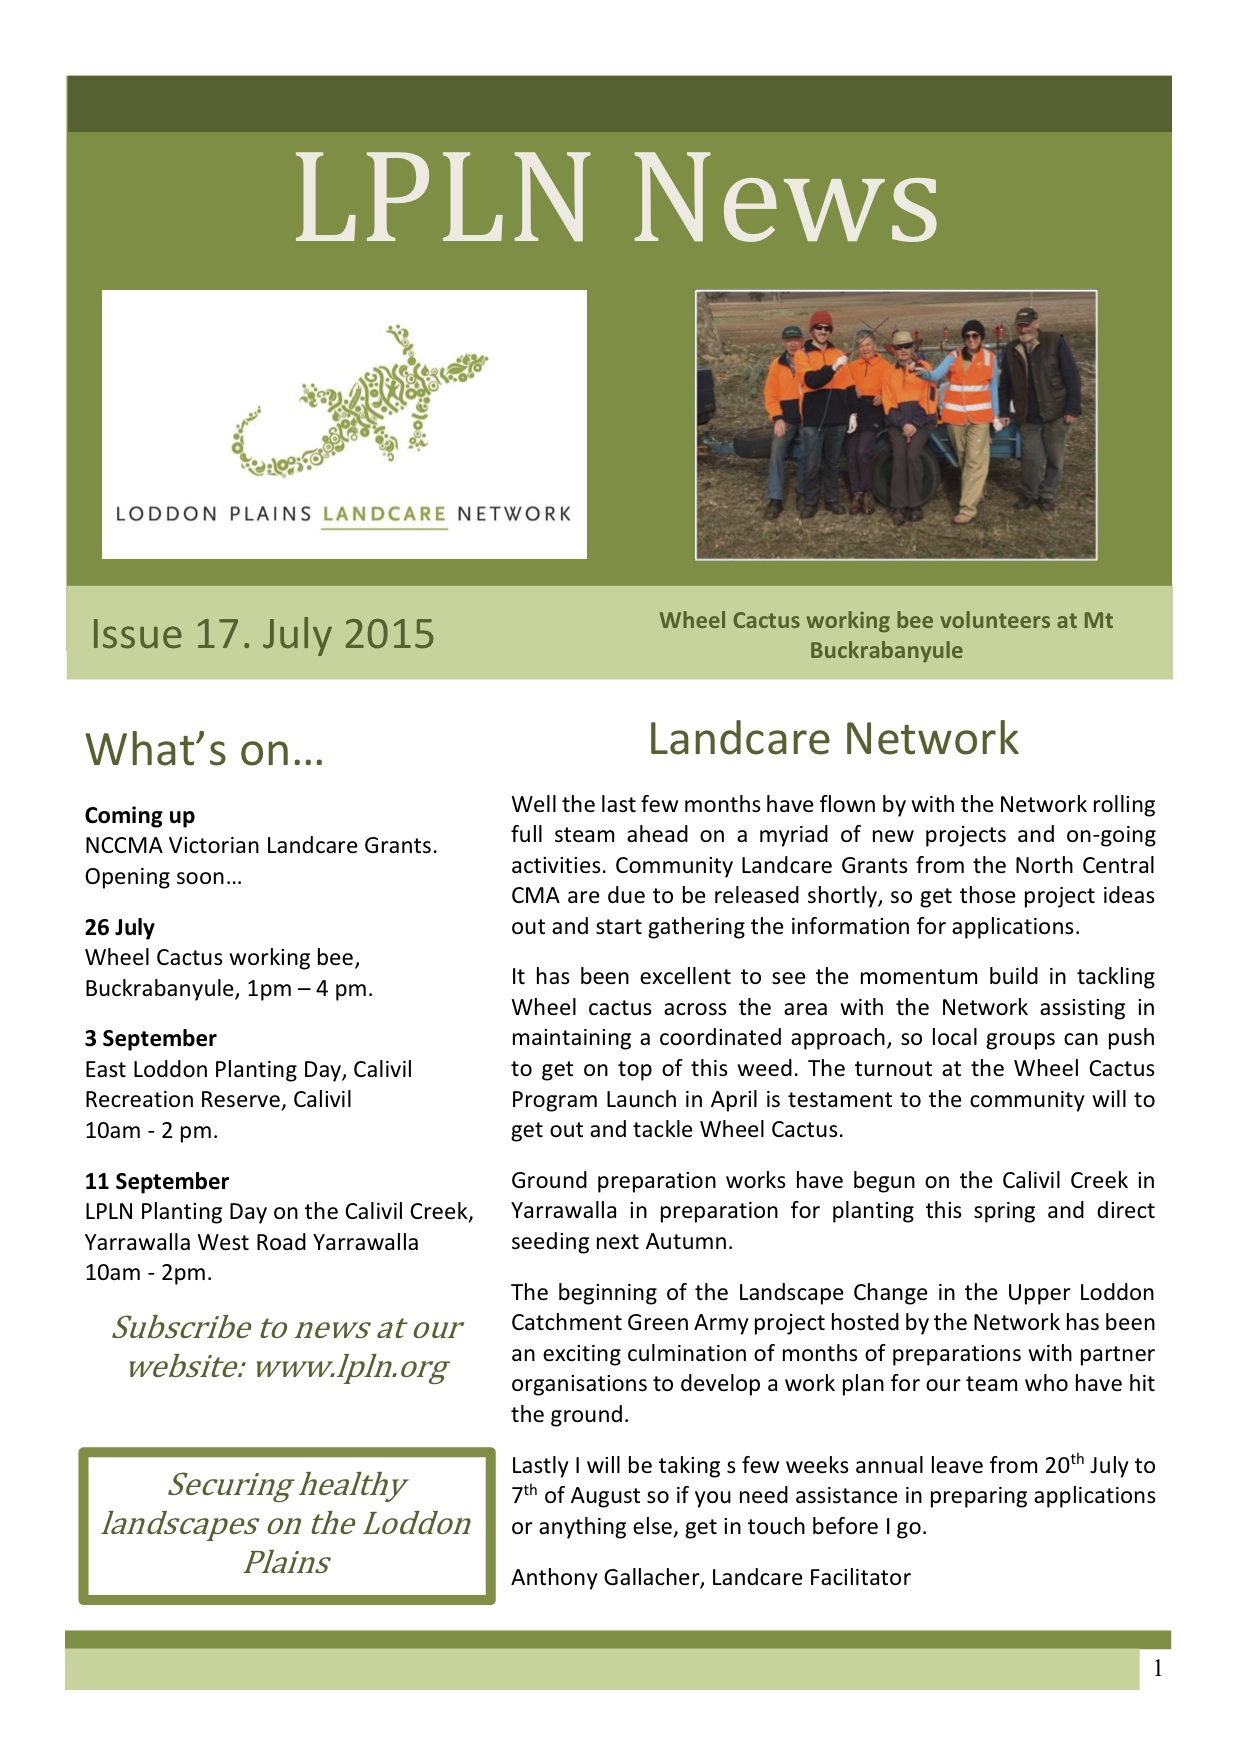 LPLN Newsletter April 2015